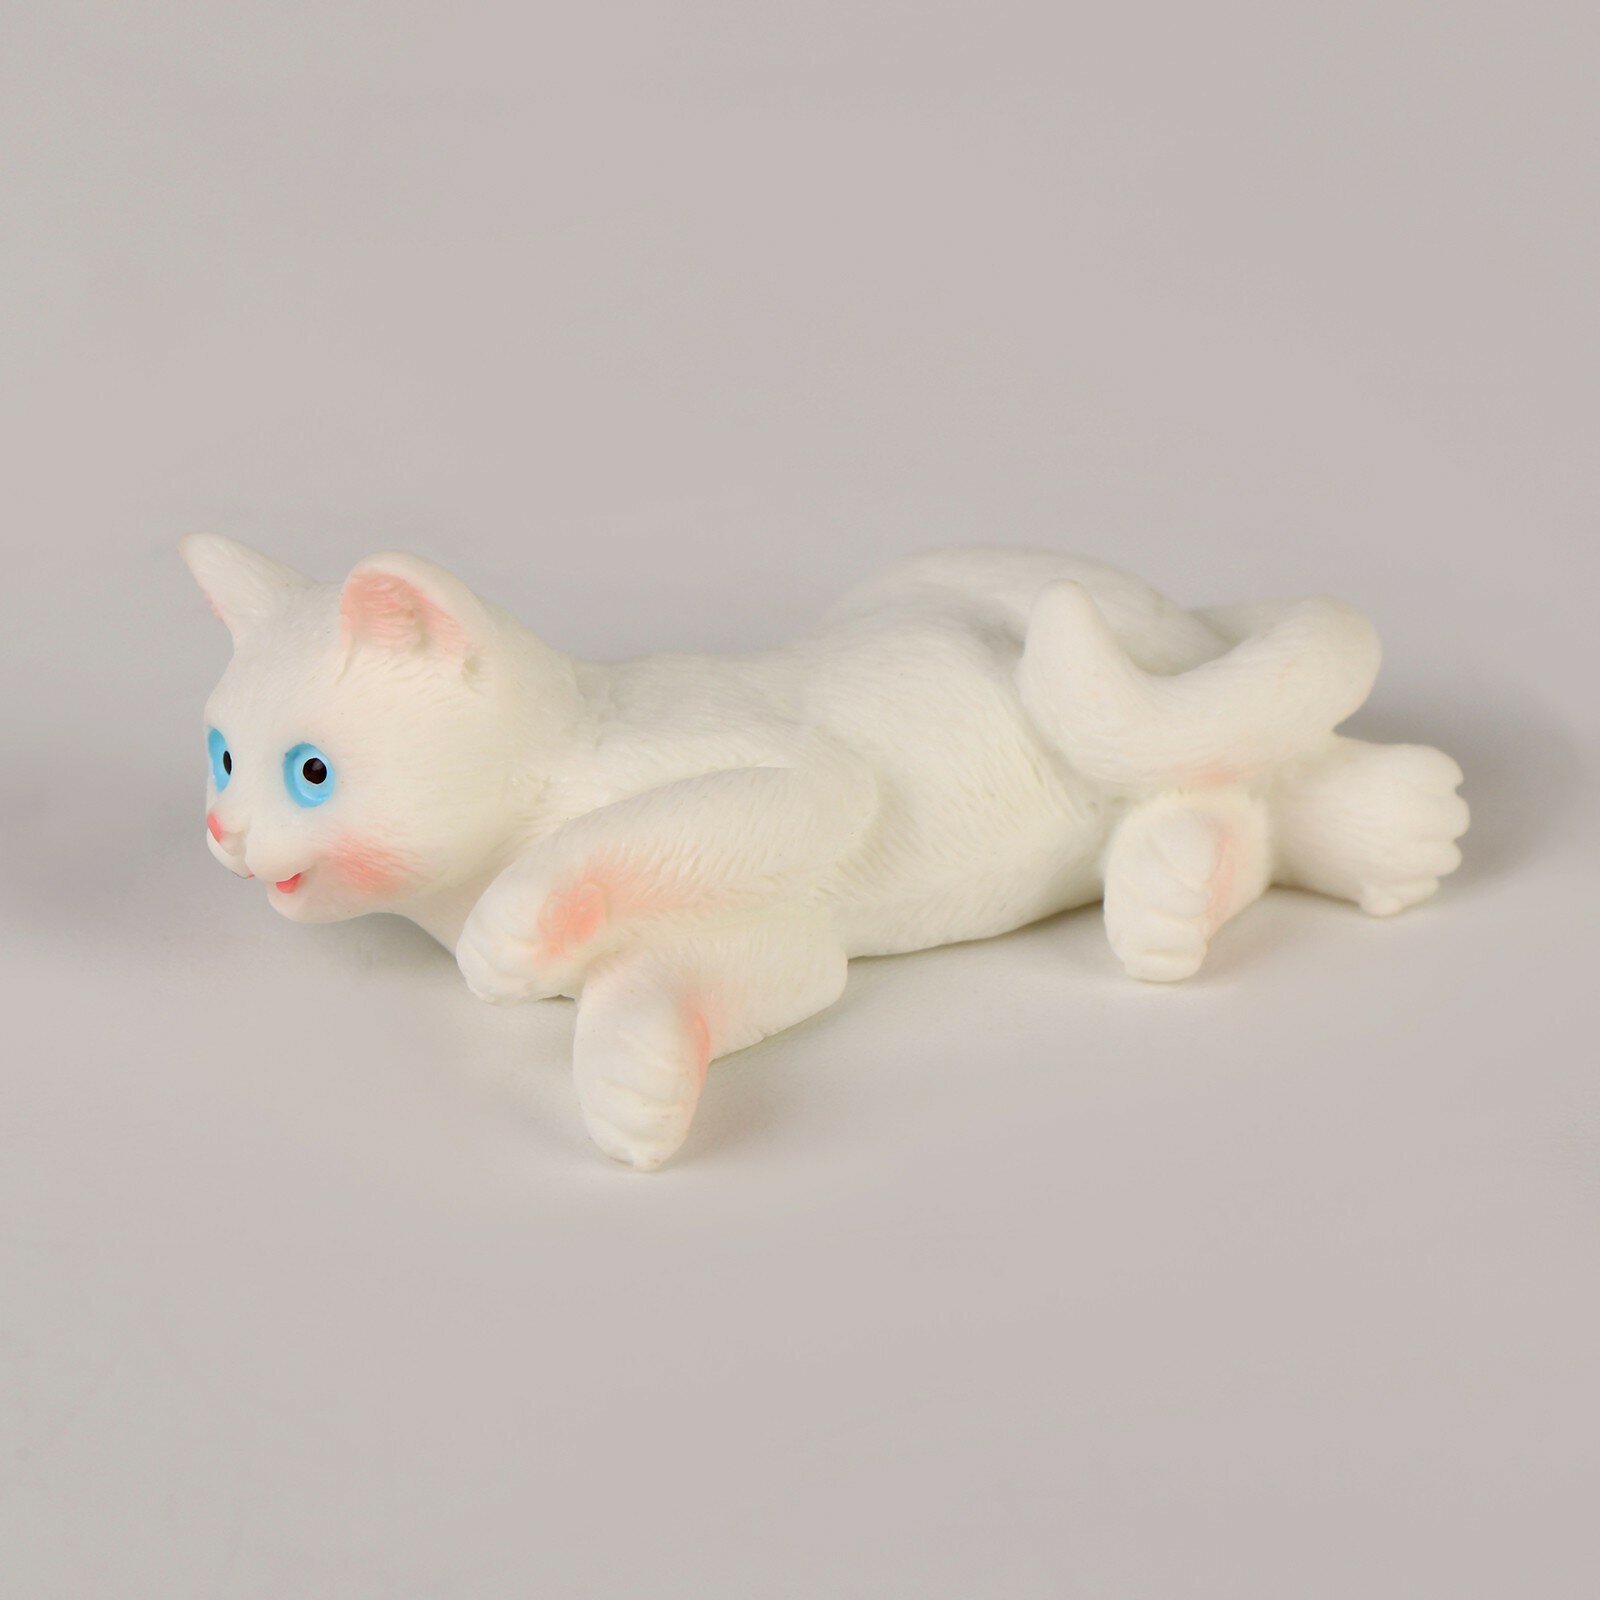 Миниатюра кукольная «Ласковый котик», набор 3 шт, размер 1 шт. — 2,5 × 1,5 × 4,5 см (1шт.)